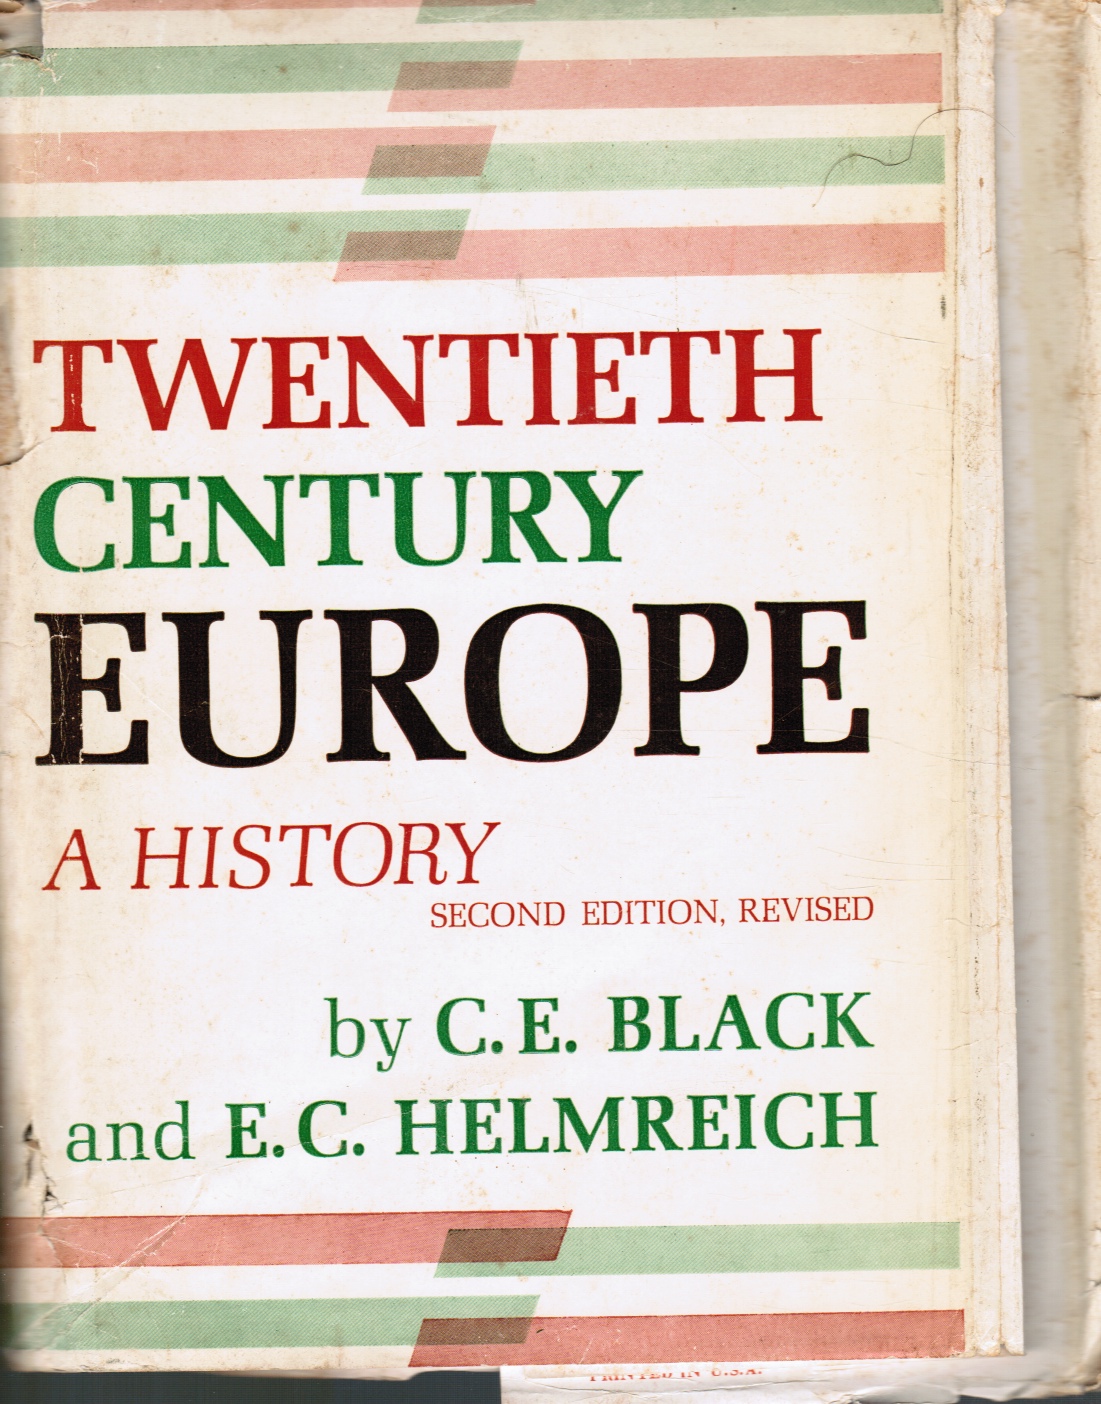 BLACK, C. E; E. C. HELMREICH - Twentieth Century Europe: A History